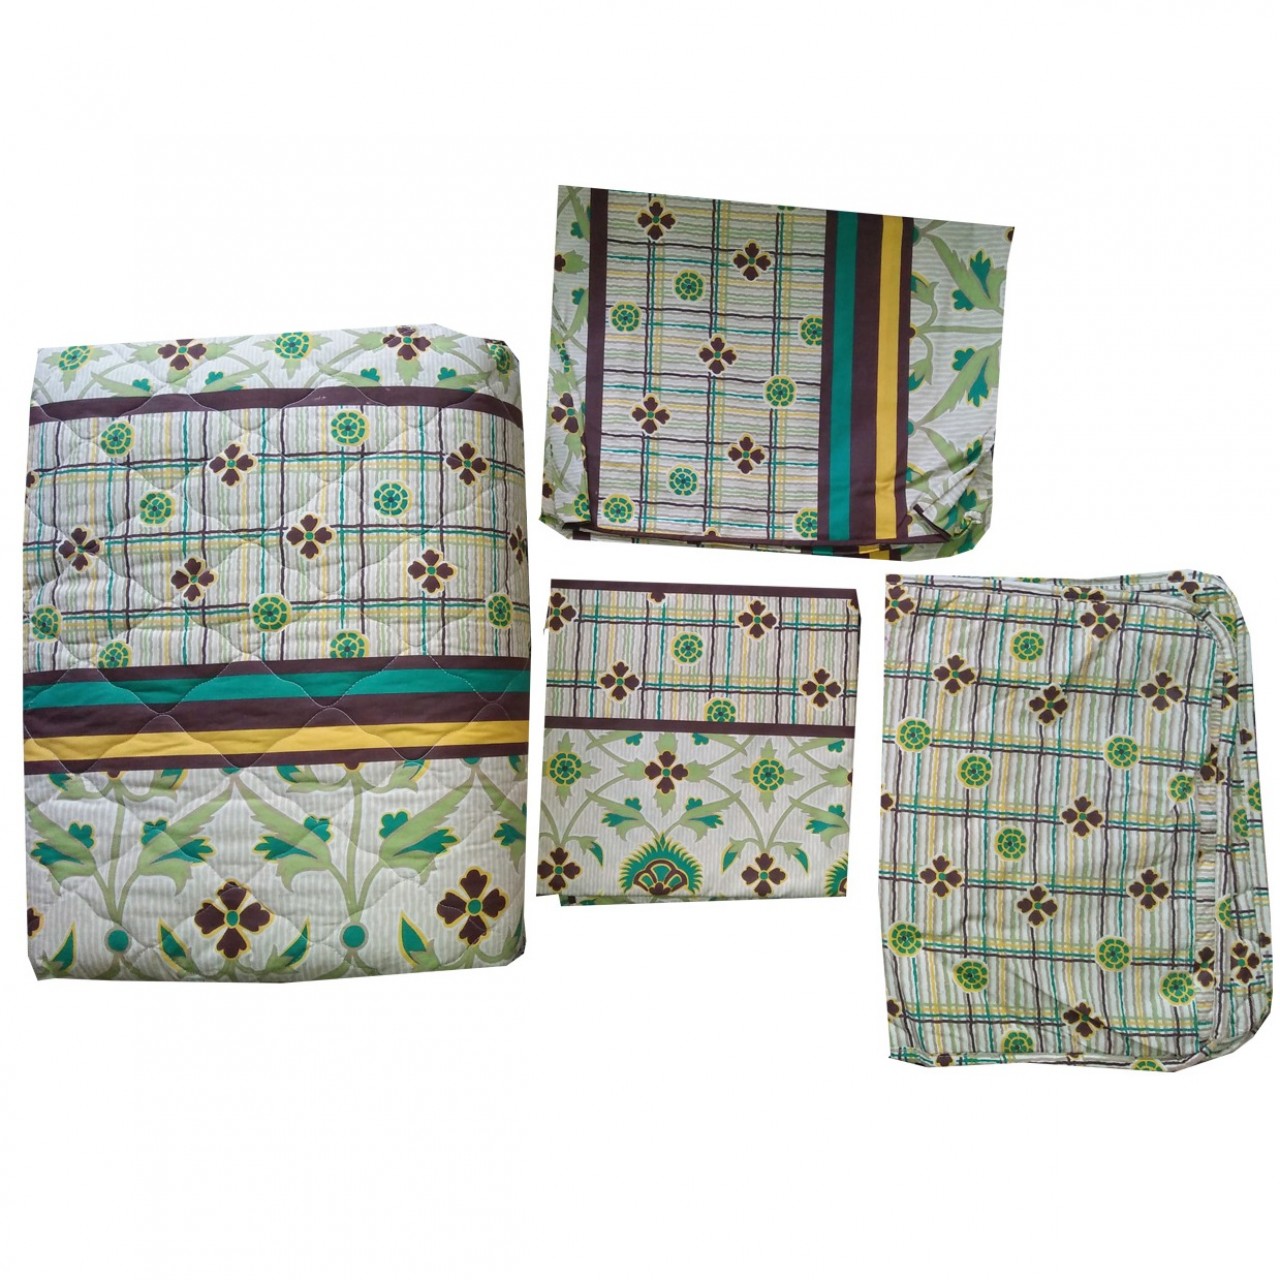 6 in 1 Sleeping Kit(Bedset) - 2 Pillows Foam, 1 Comforter, 1 Bedsheet & 2 Pillow